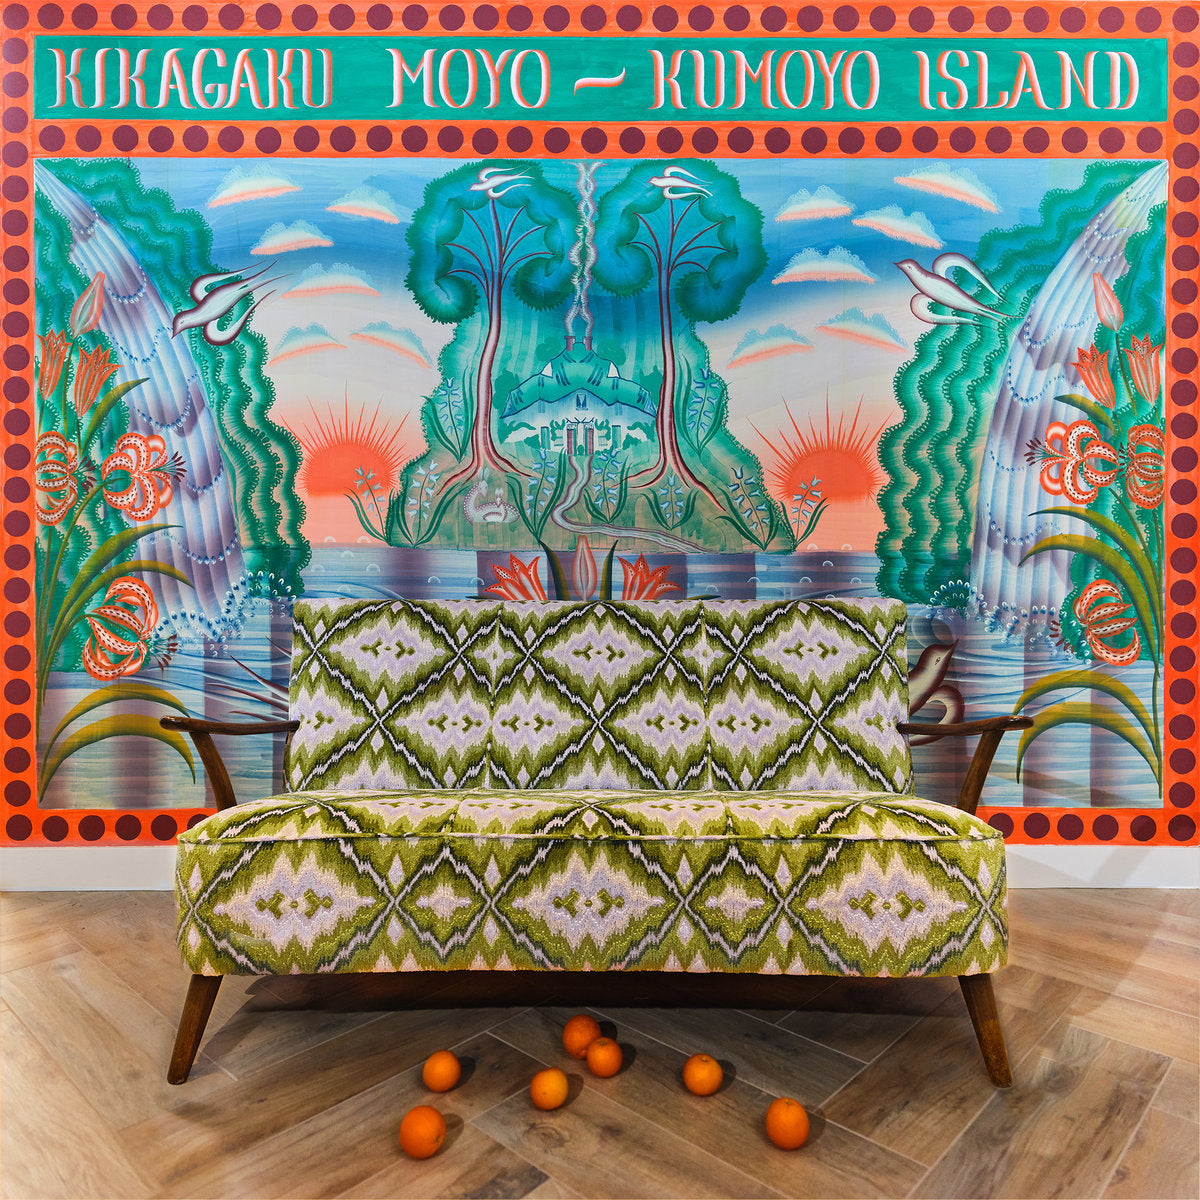 KIKAGAKU MOYO - KUMOYO ISLAND Vinyl LP